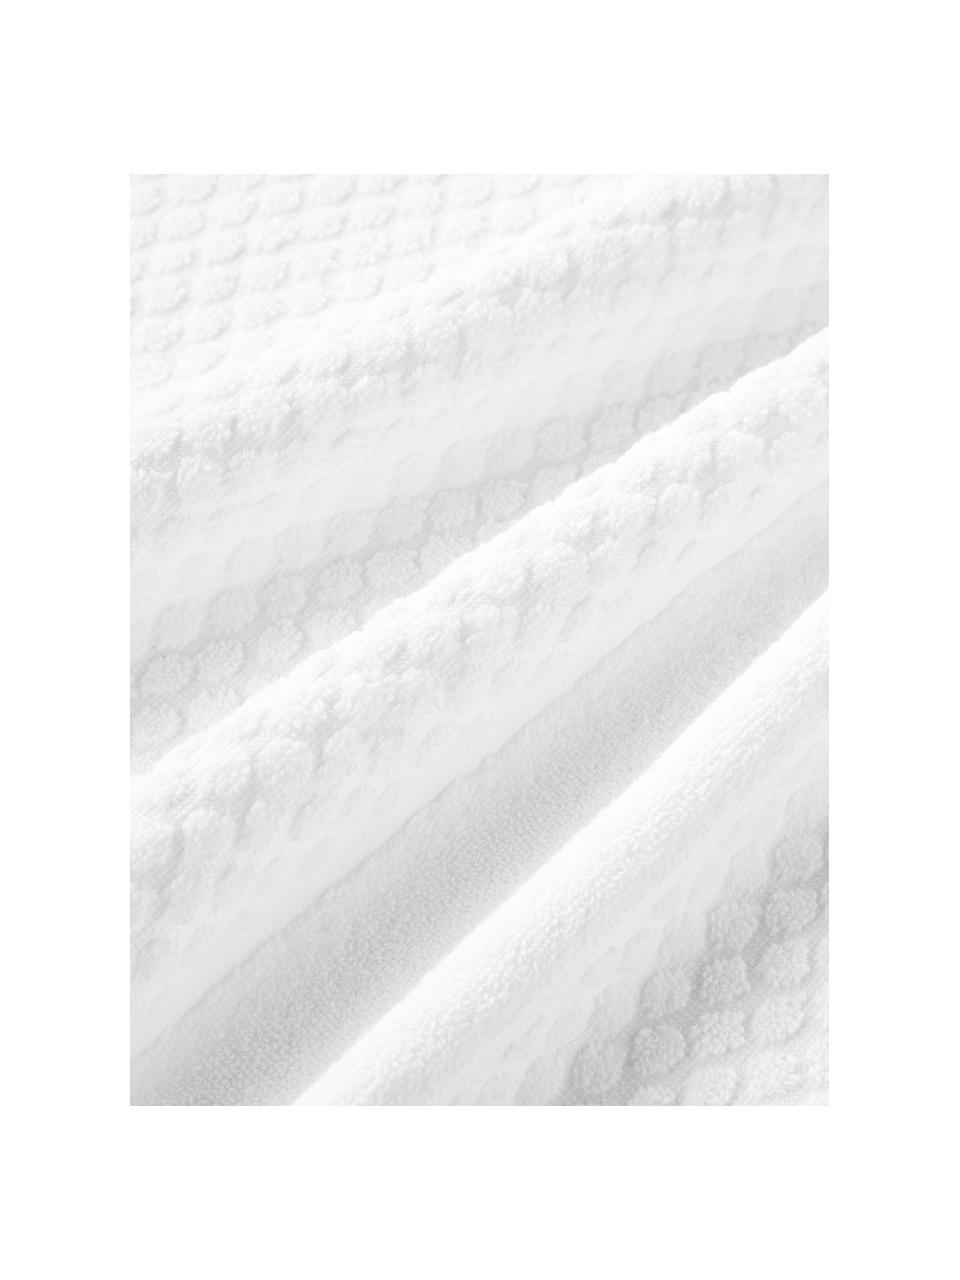 Handtuch Katharina, in verschiedenen Größen, Weiß, Handtuch, B 50 x L 100 cm, 2 Stück